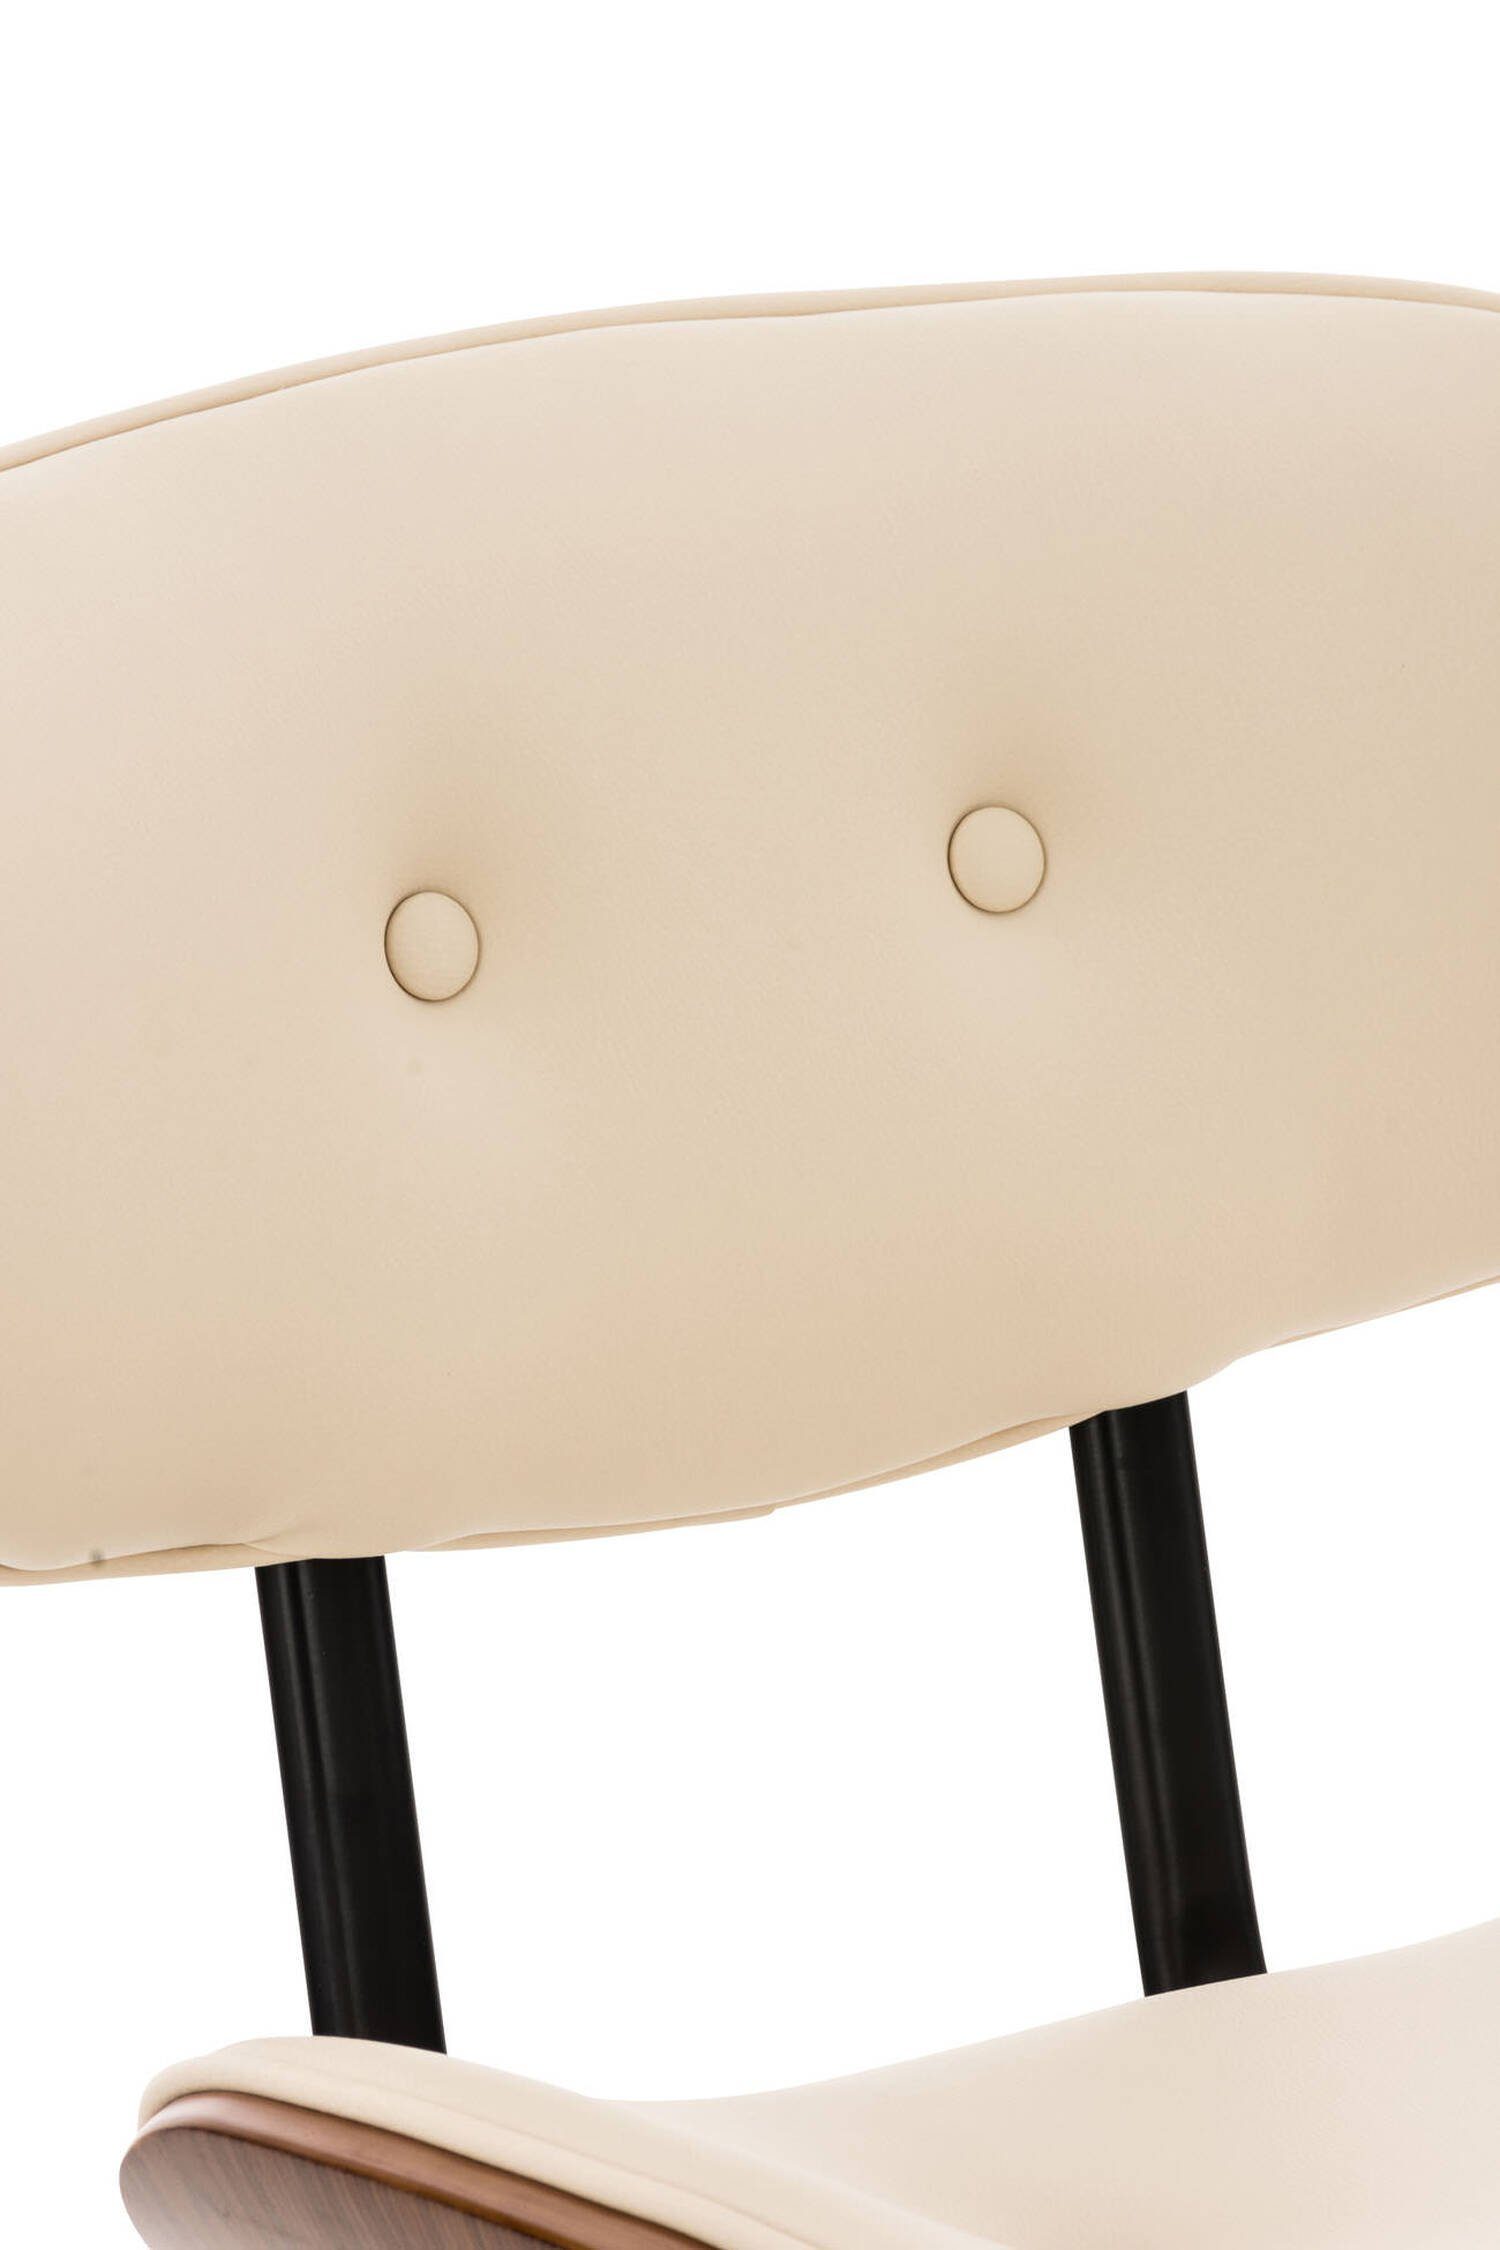 Küche Creme Fußstütze und 360° chrom bequemer (Barstuhl für - TPFLiving mit - Gestell angenehmer Sitzfläche Kunstleder Hocker Theke Metall drehbar), & Barhocker Sitzfläche: Sarnico Rückenlehne